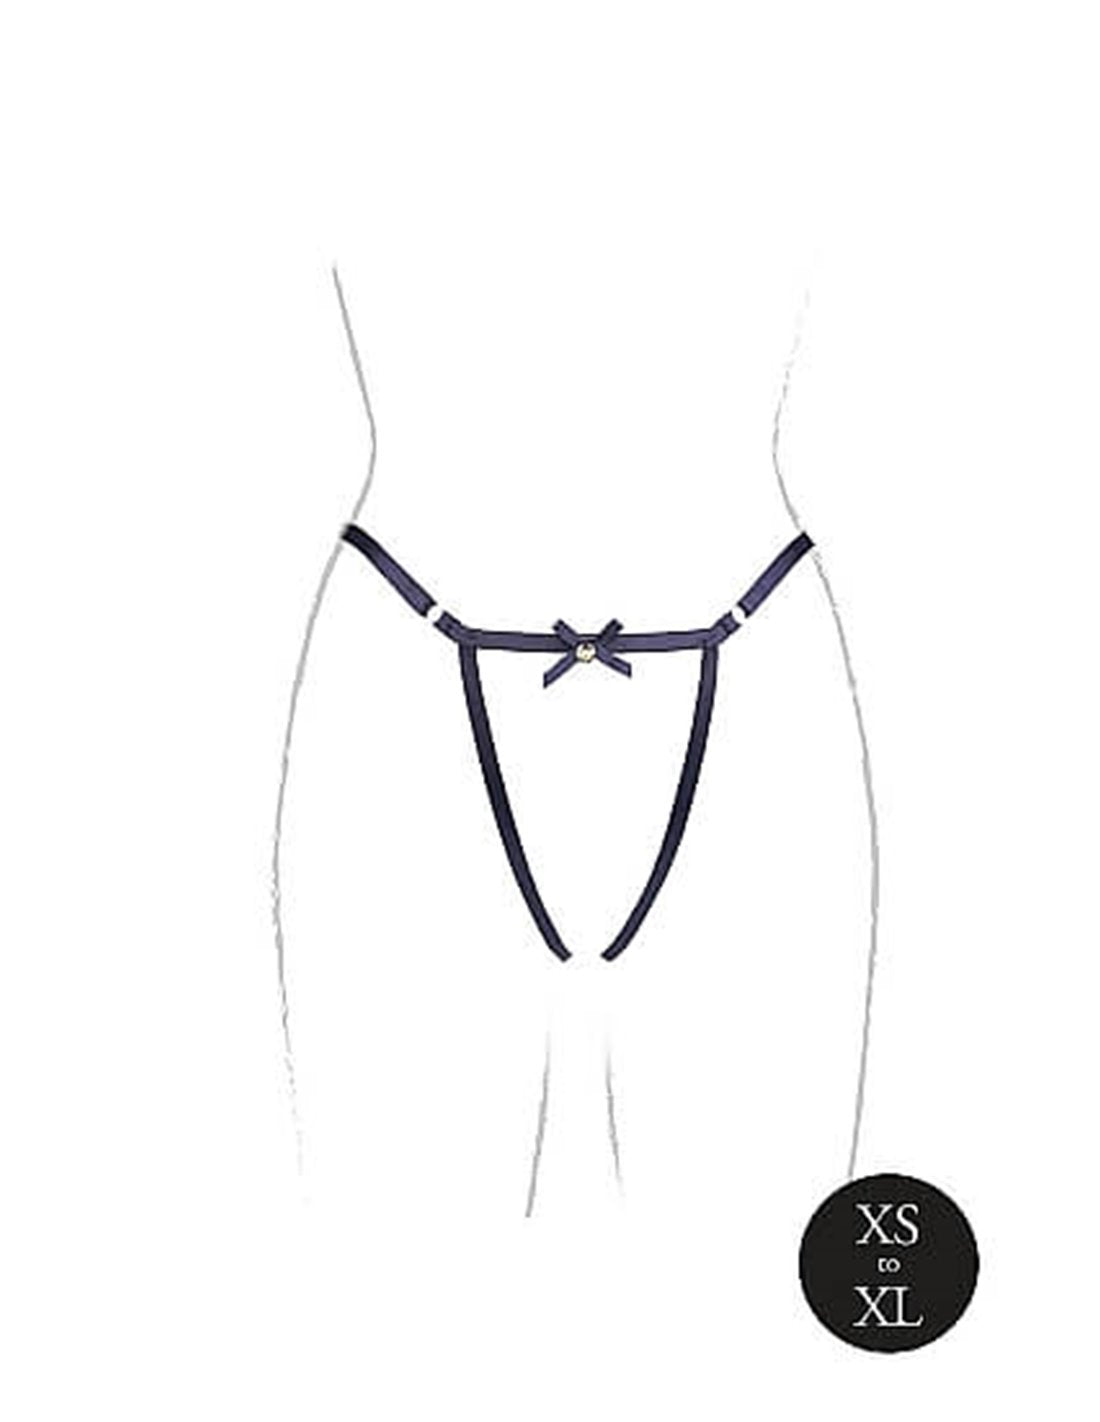 Le Desir Aime Crotchless Panties - Seductive Open Crotch Design